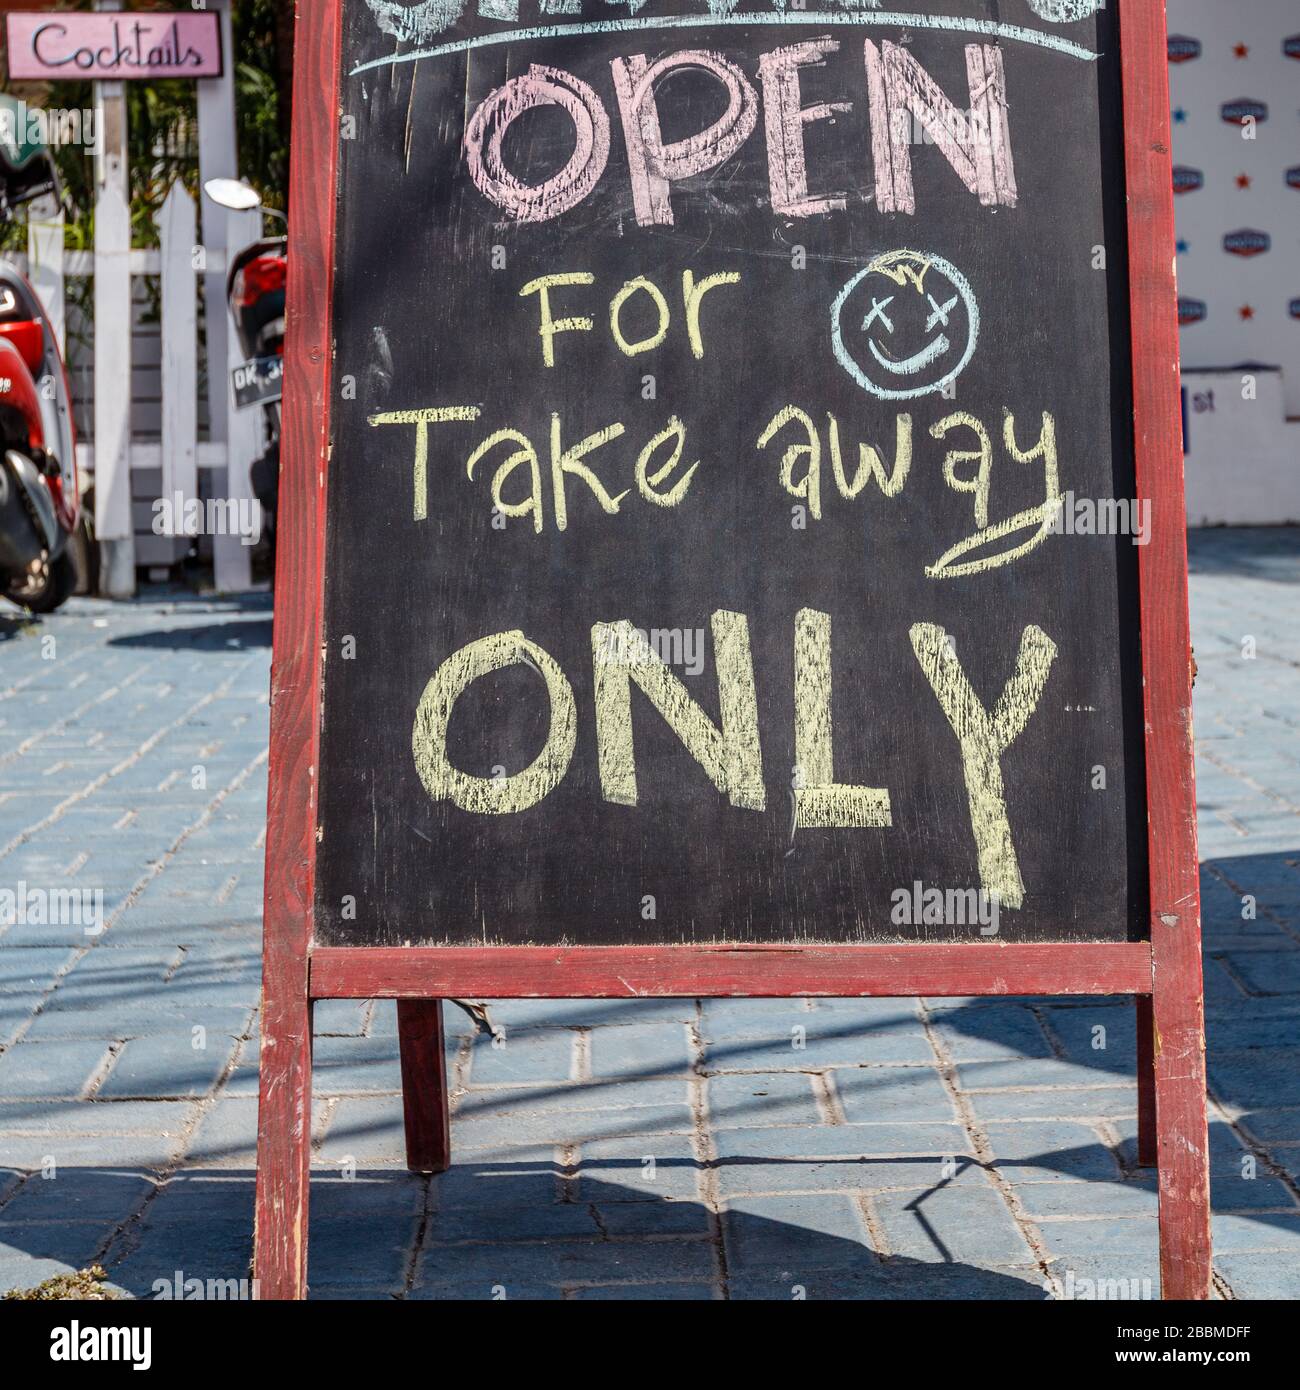 Schild "Café Blackboard" während der Quarantäne für COVID-19 "nur zum Mitnehmen geöffnet". Petitenget, Bali beliebte Touristengegend. Indonesien. Quadratisches Bild. Stockfoto